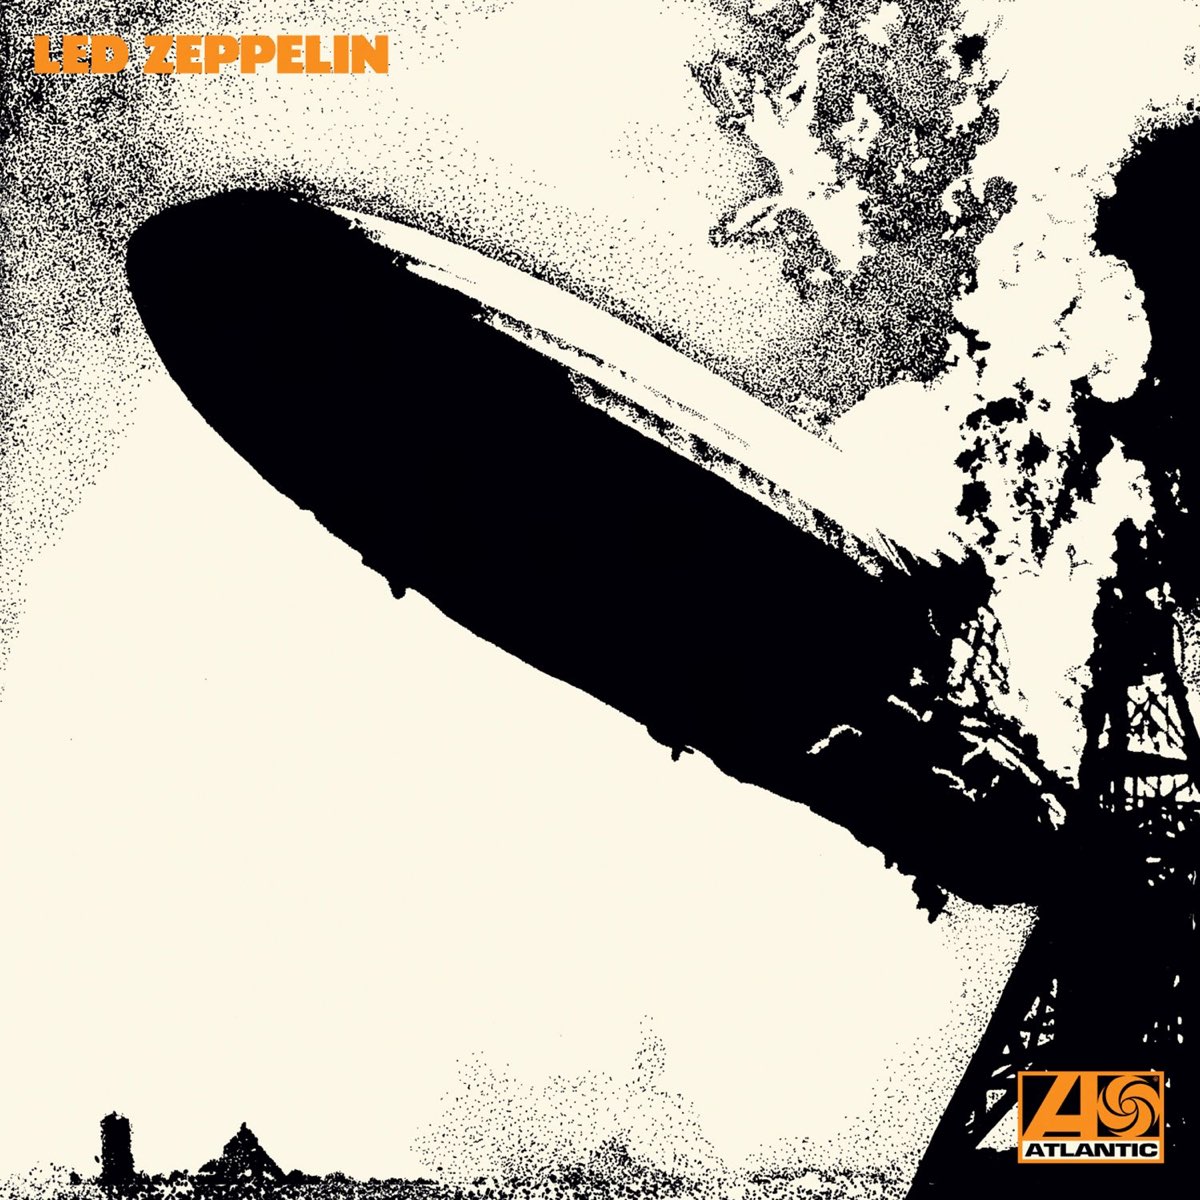 "Led Zeppelin" by Led Zeppelin album cover